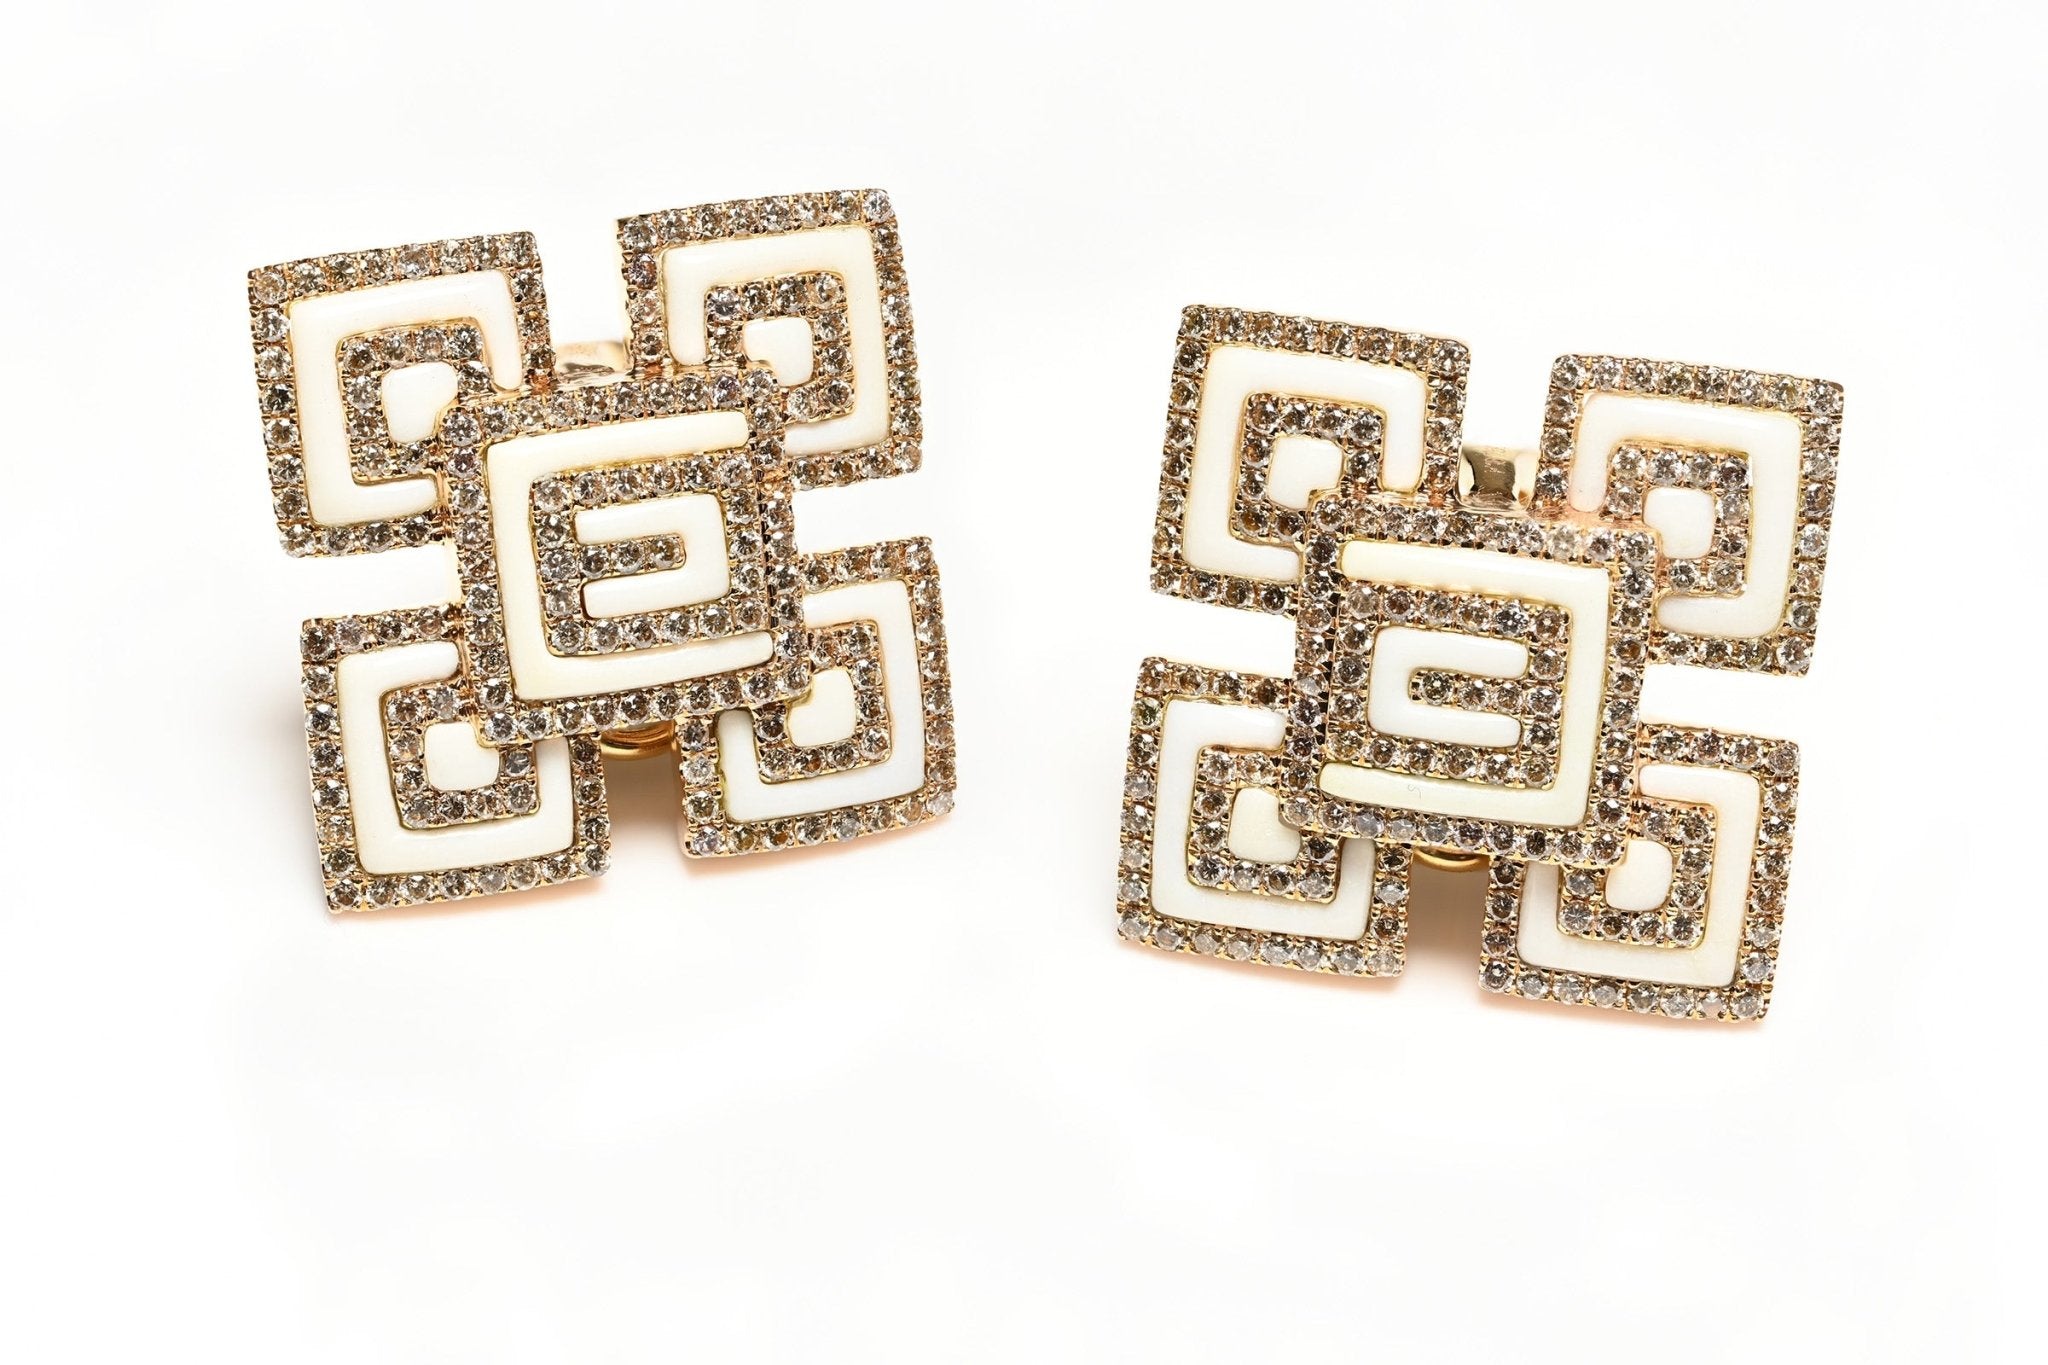 Elegant Ceramic & Diamond Earrings in 18K Gold